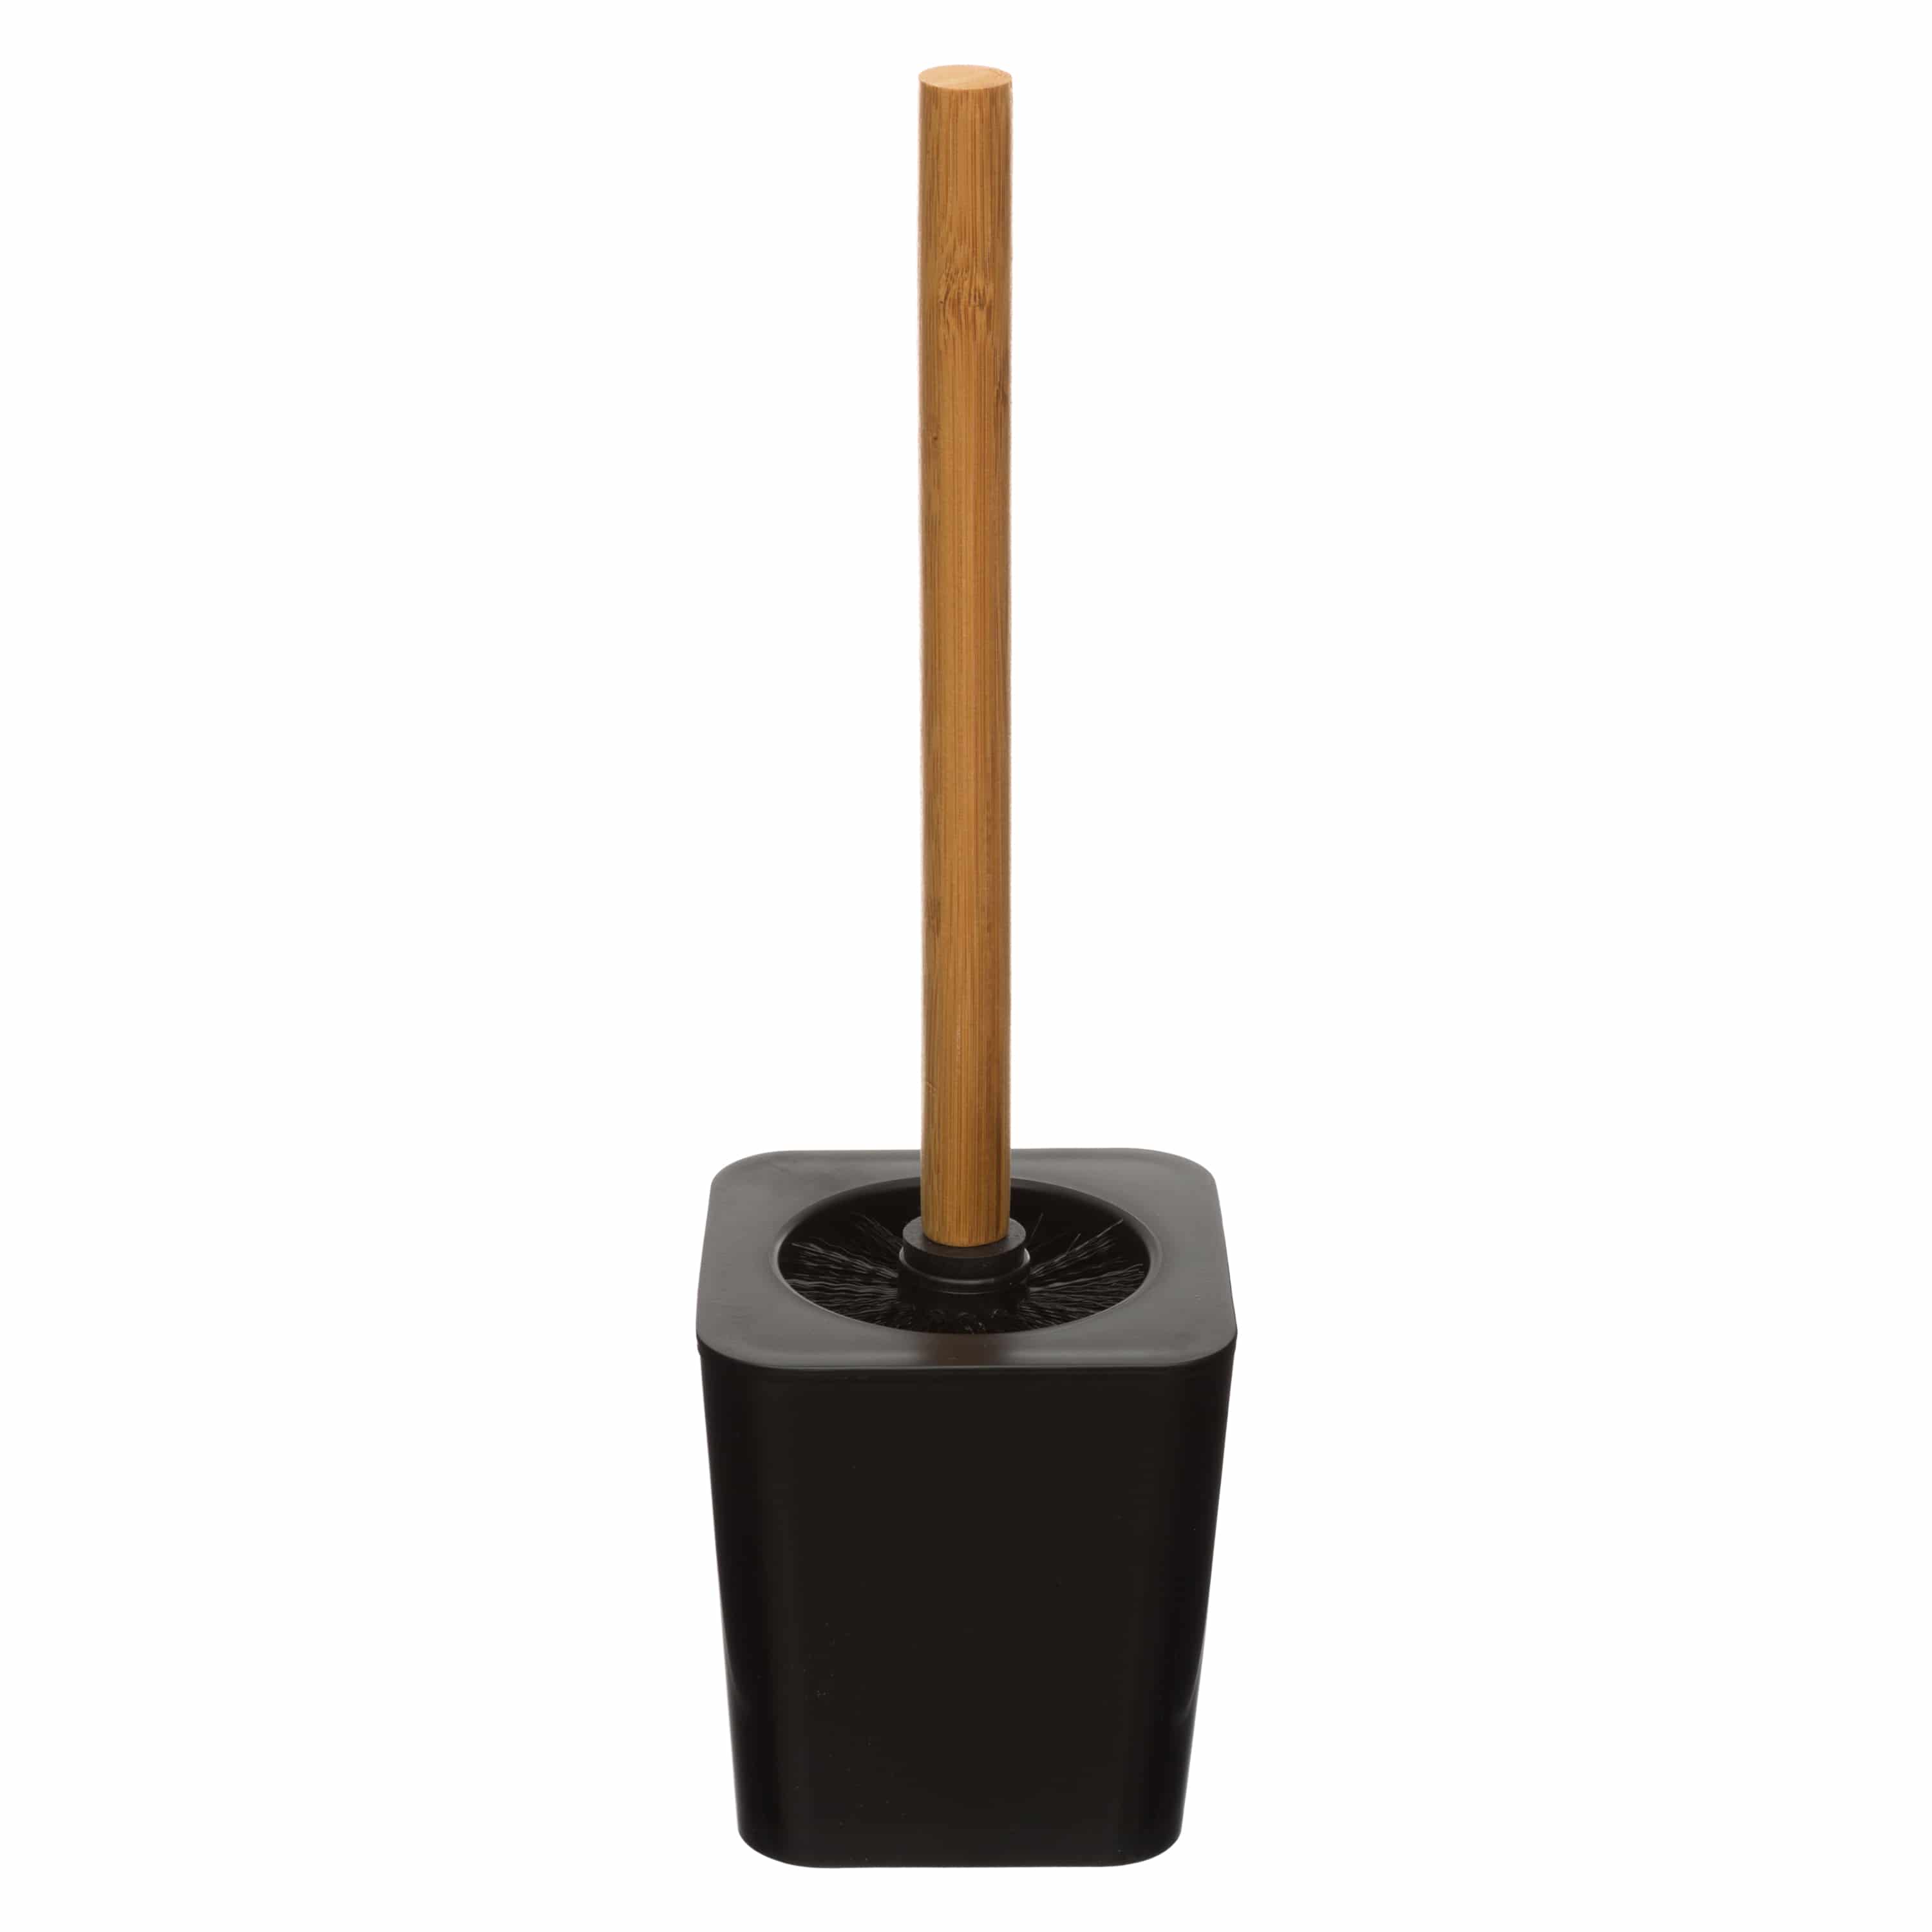 4goodz kunststof Toiletborstel met Bamboe steel - zwart/bruin